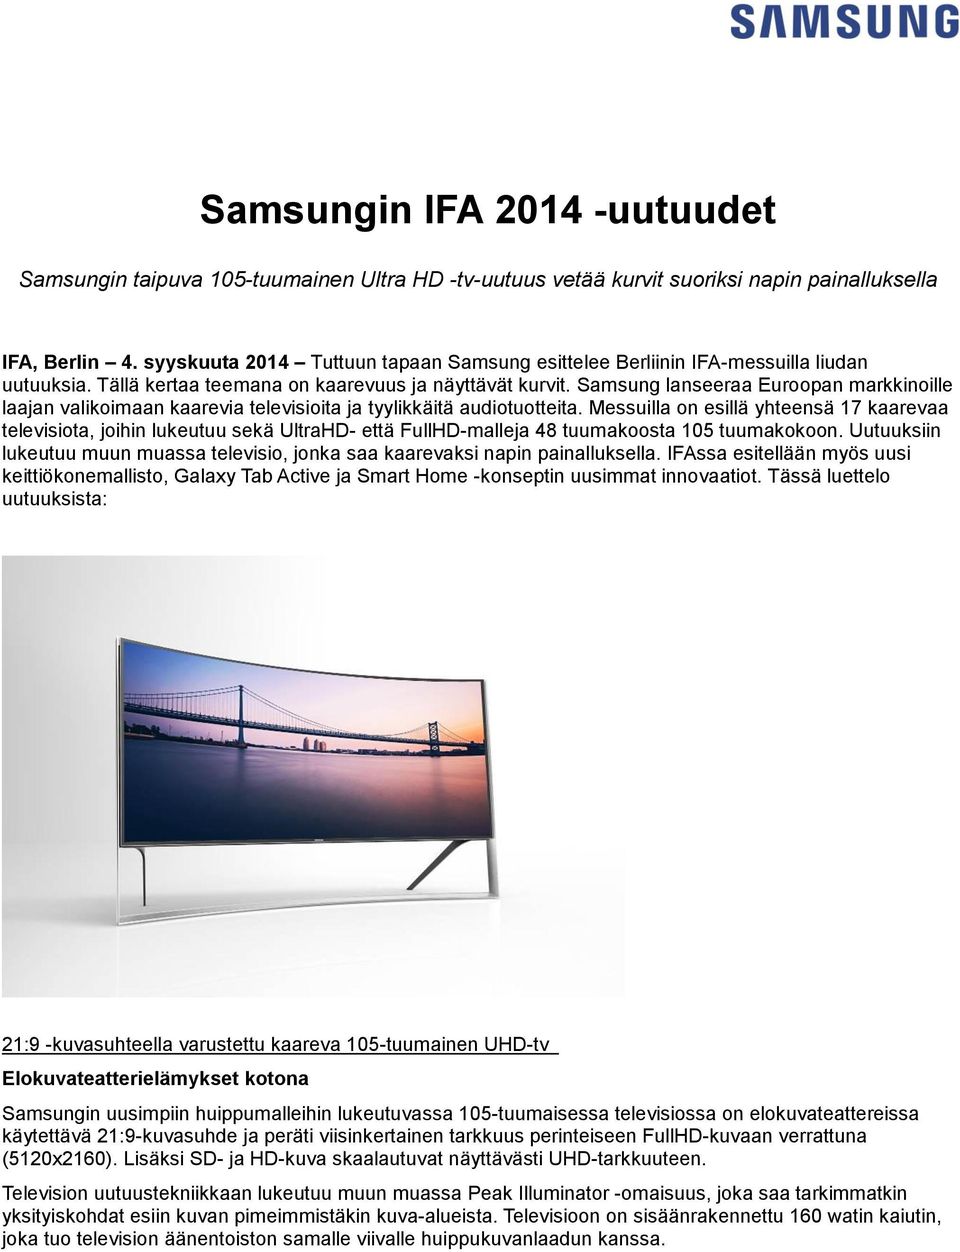 Samsung lanseeraa Euroopan markkinoille laajan valikoimaan kaarevia televisioita ja tyylikkäitä audiotuotteita.